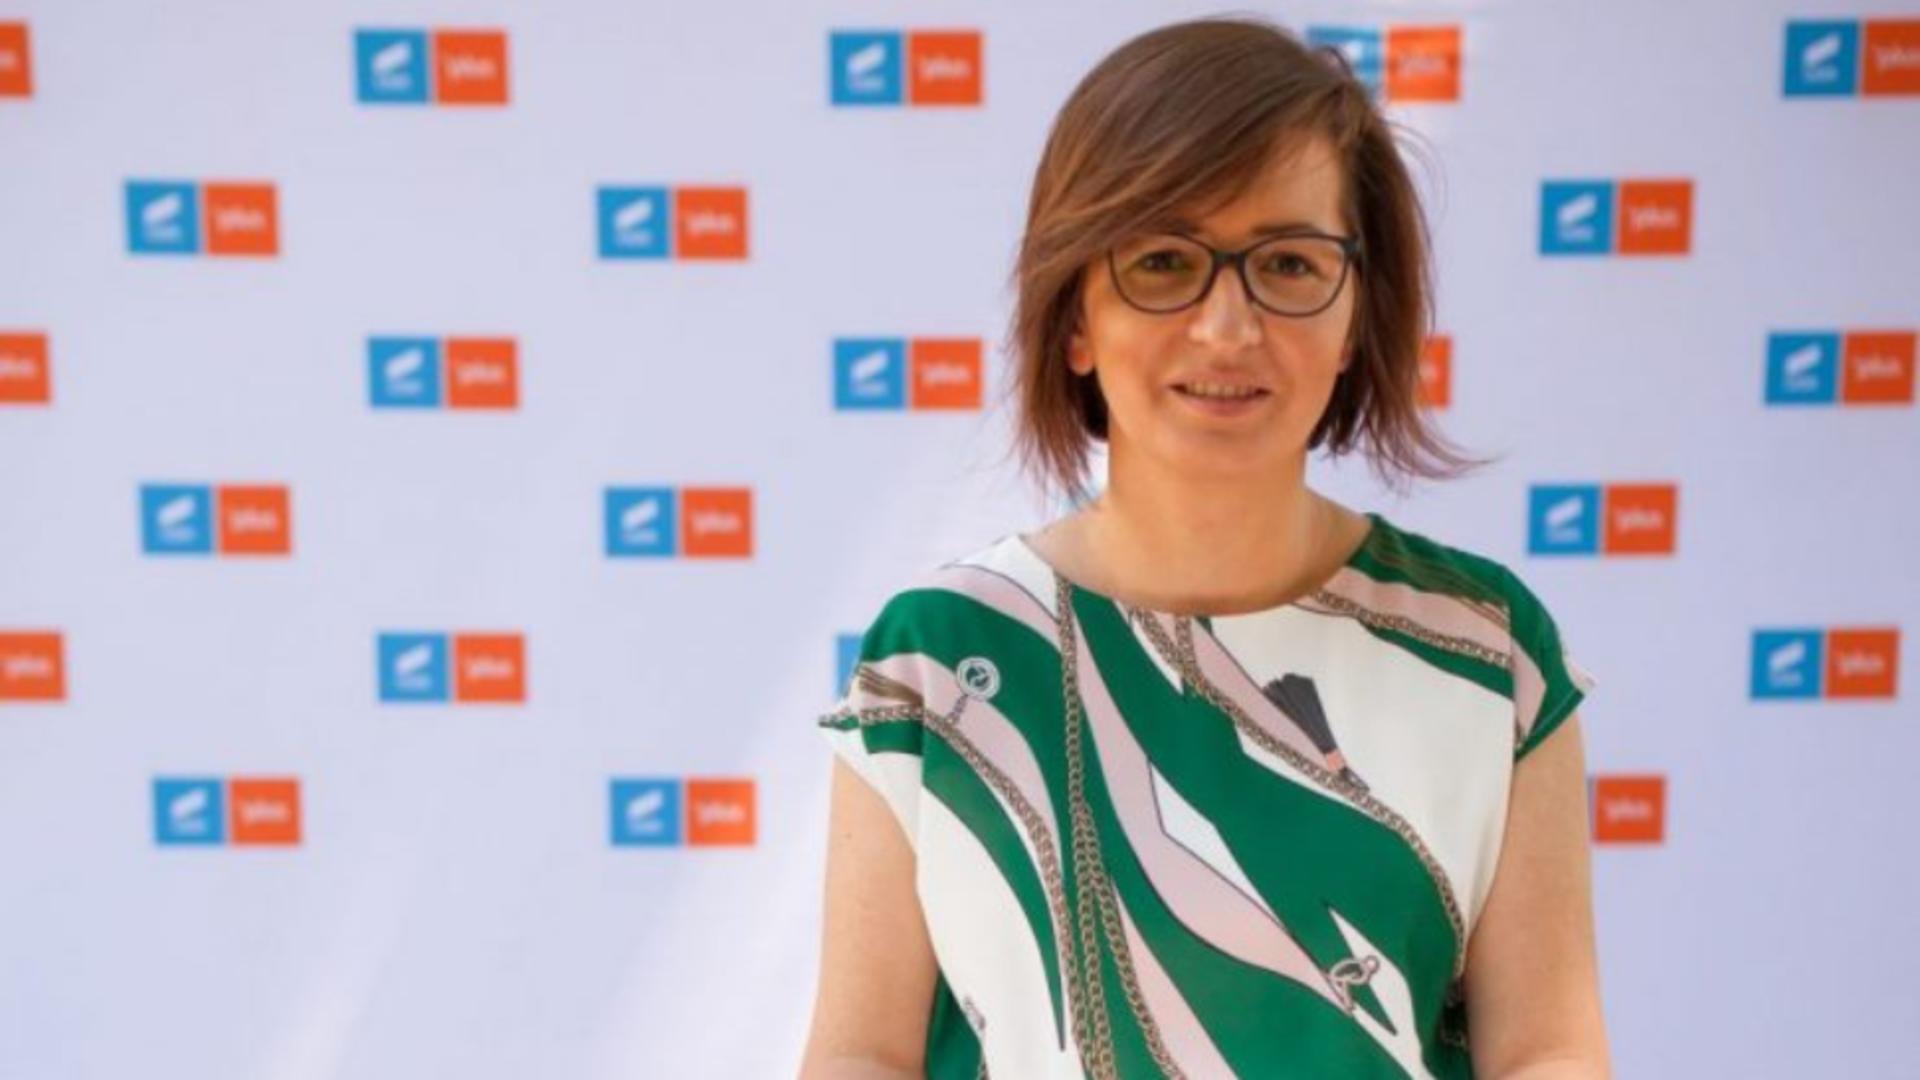 Ioana Mihăilă, de la clinică de înfrumusețare, specializată în epilare definitivă, la Ministerul Sănătății